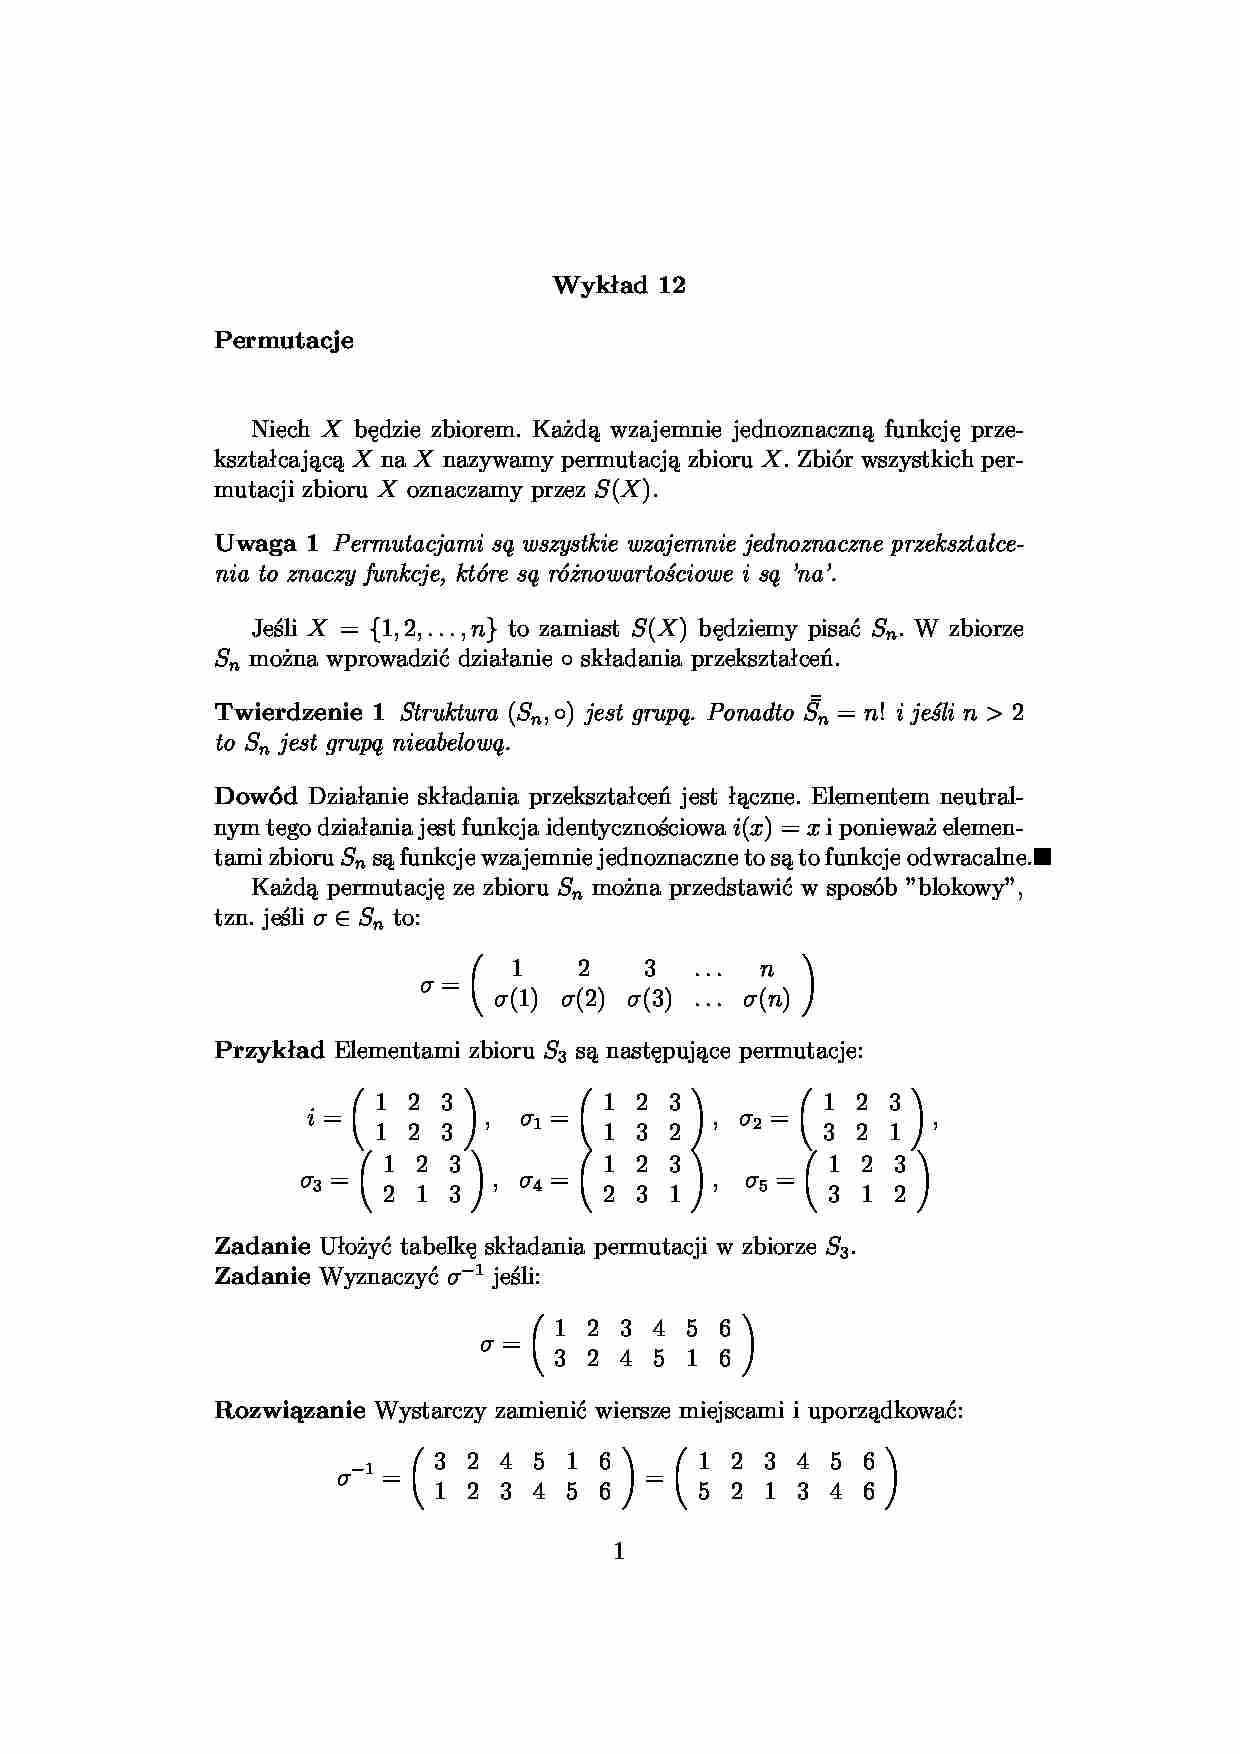 Permutacje 1 - algebra - strona 1